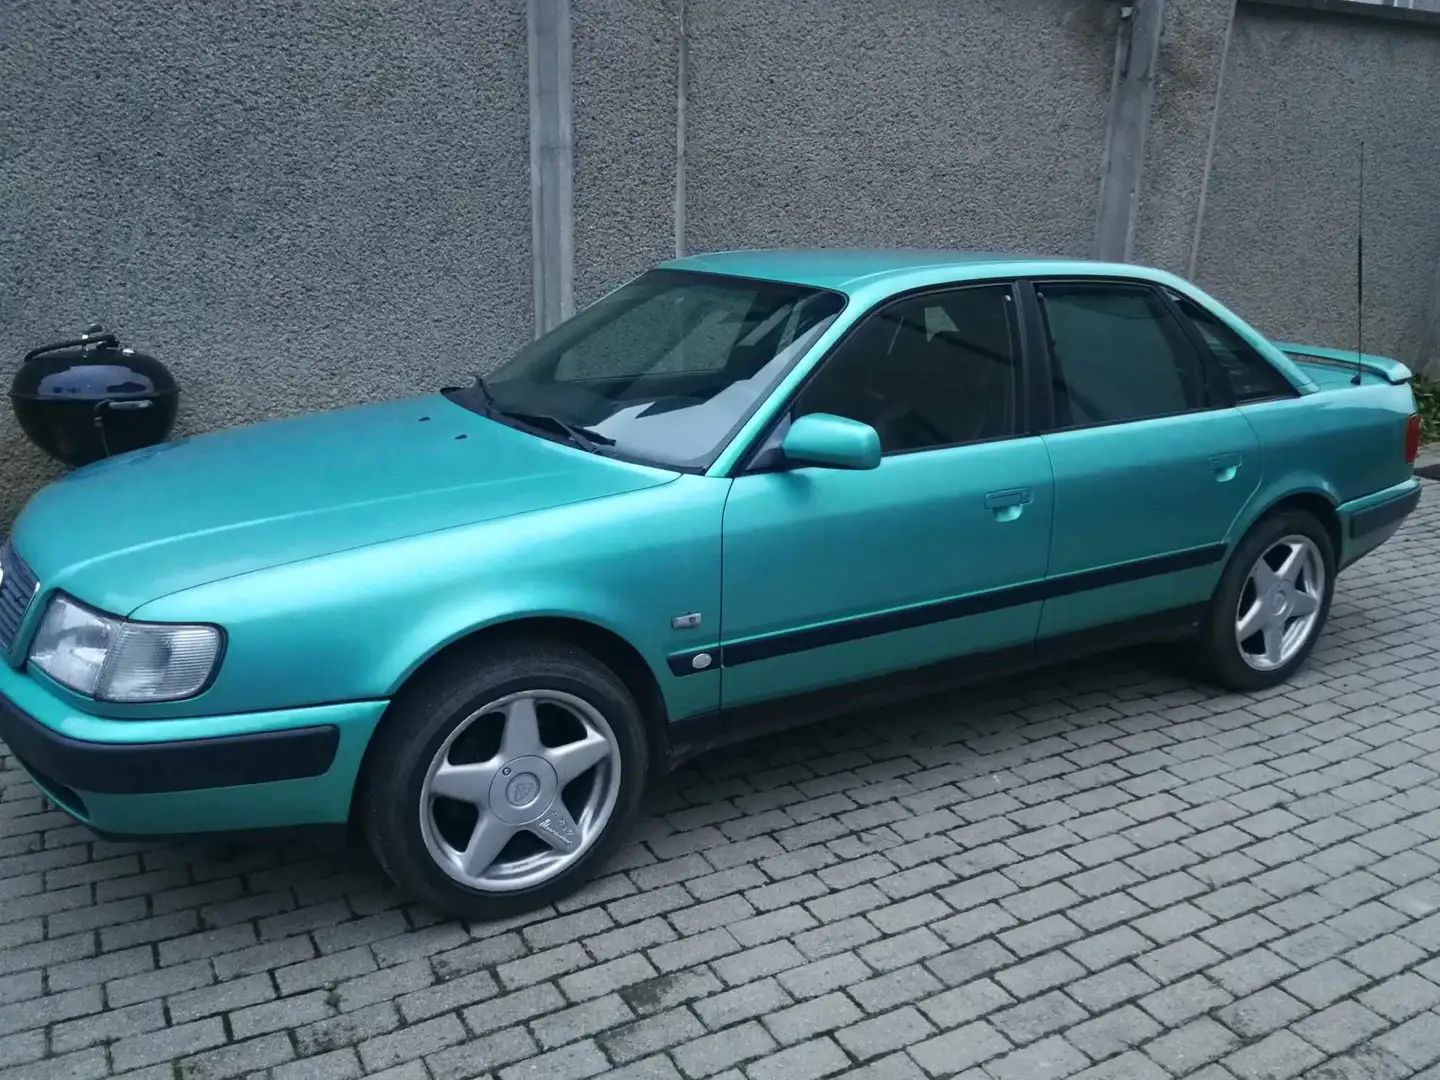 Audi 100 Audi C4 ,1994 Bj, 2.8 benzine Quattro 128 kw, Blue - 1